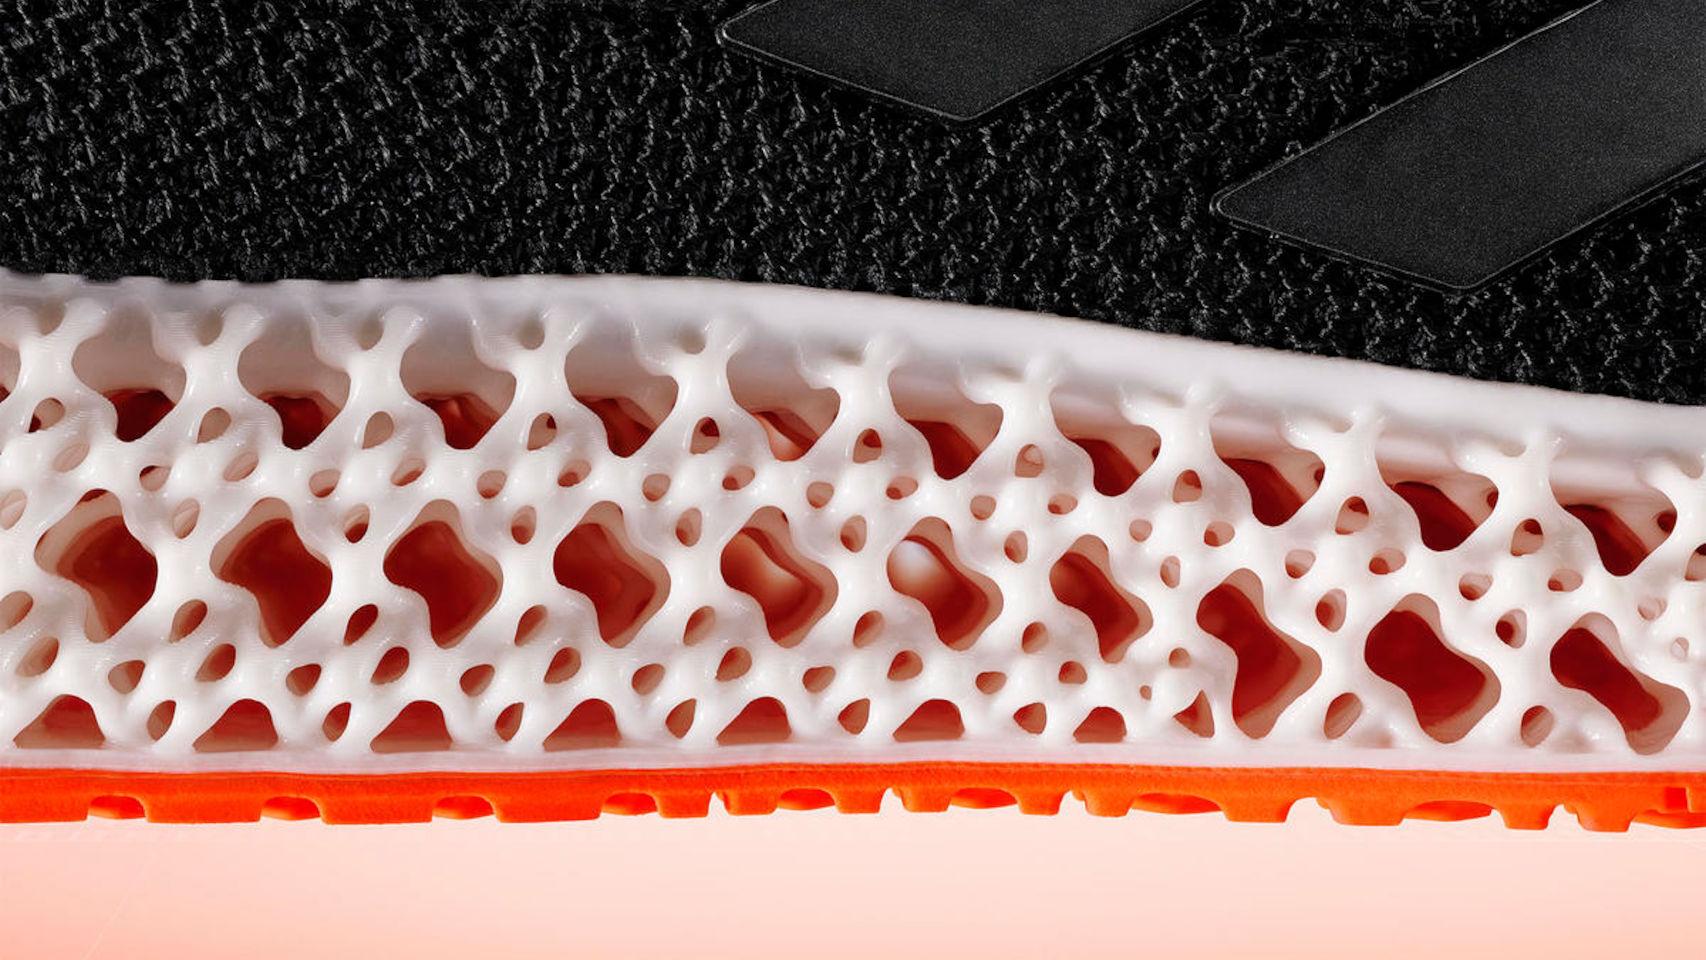 Las suelas impresas en 3D que mueven el pie